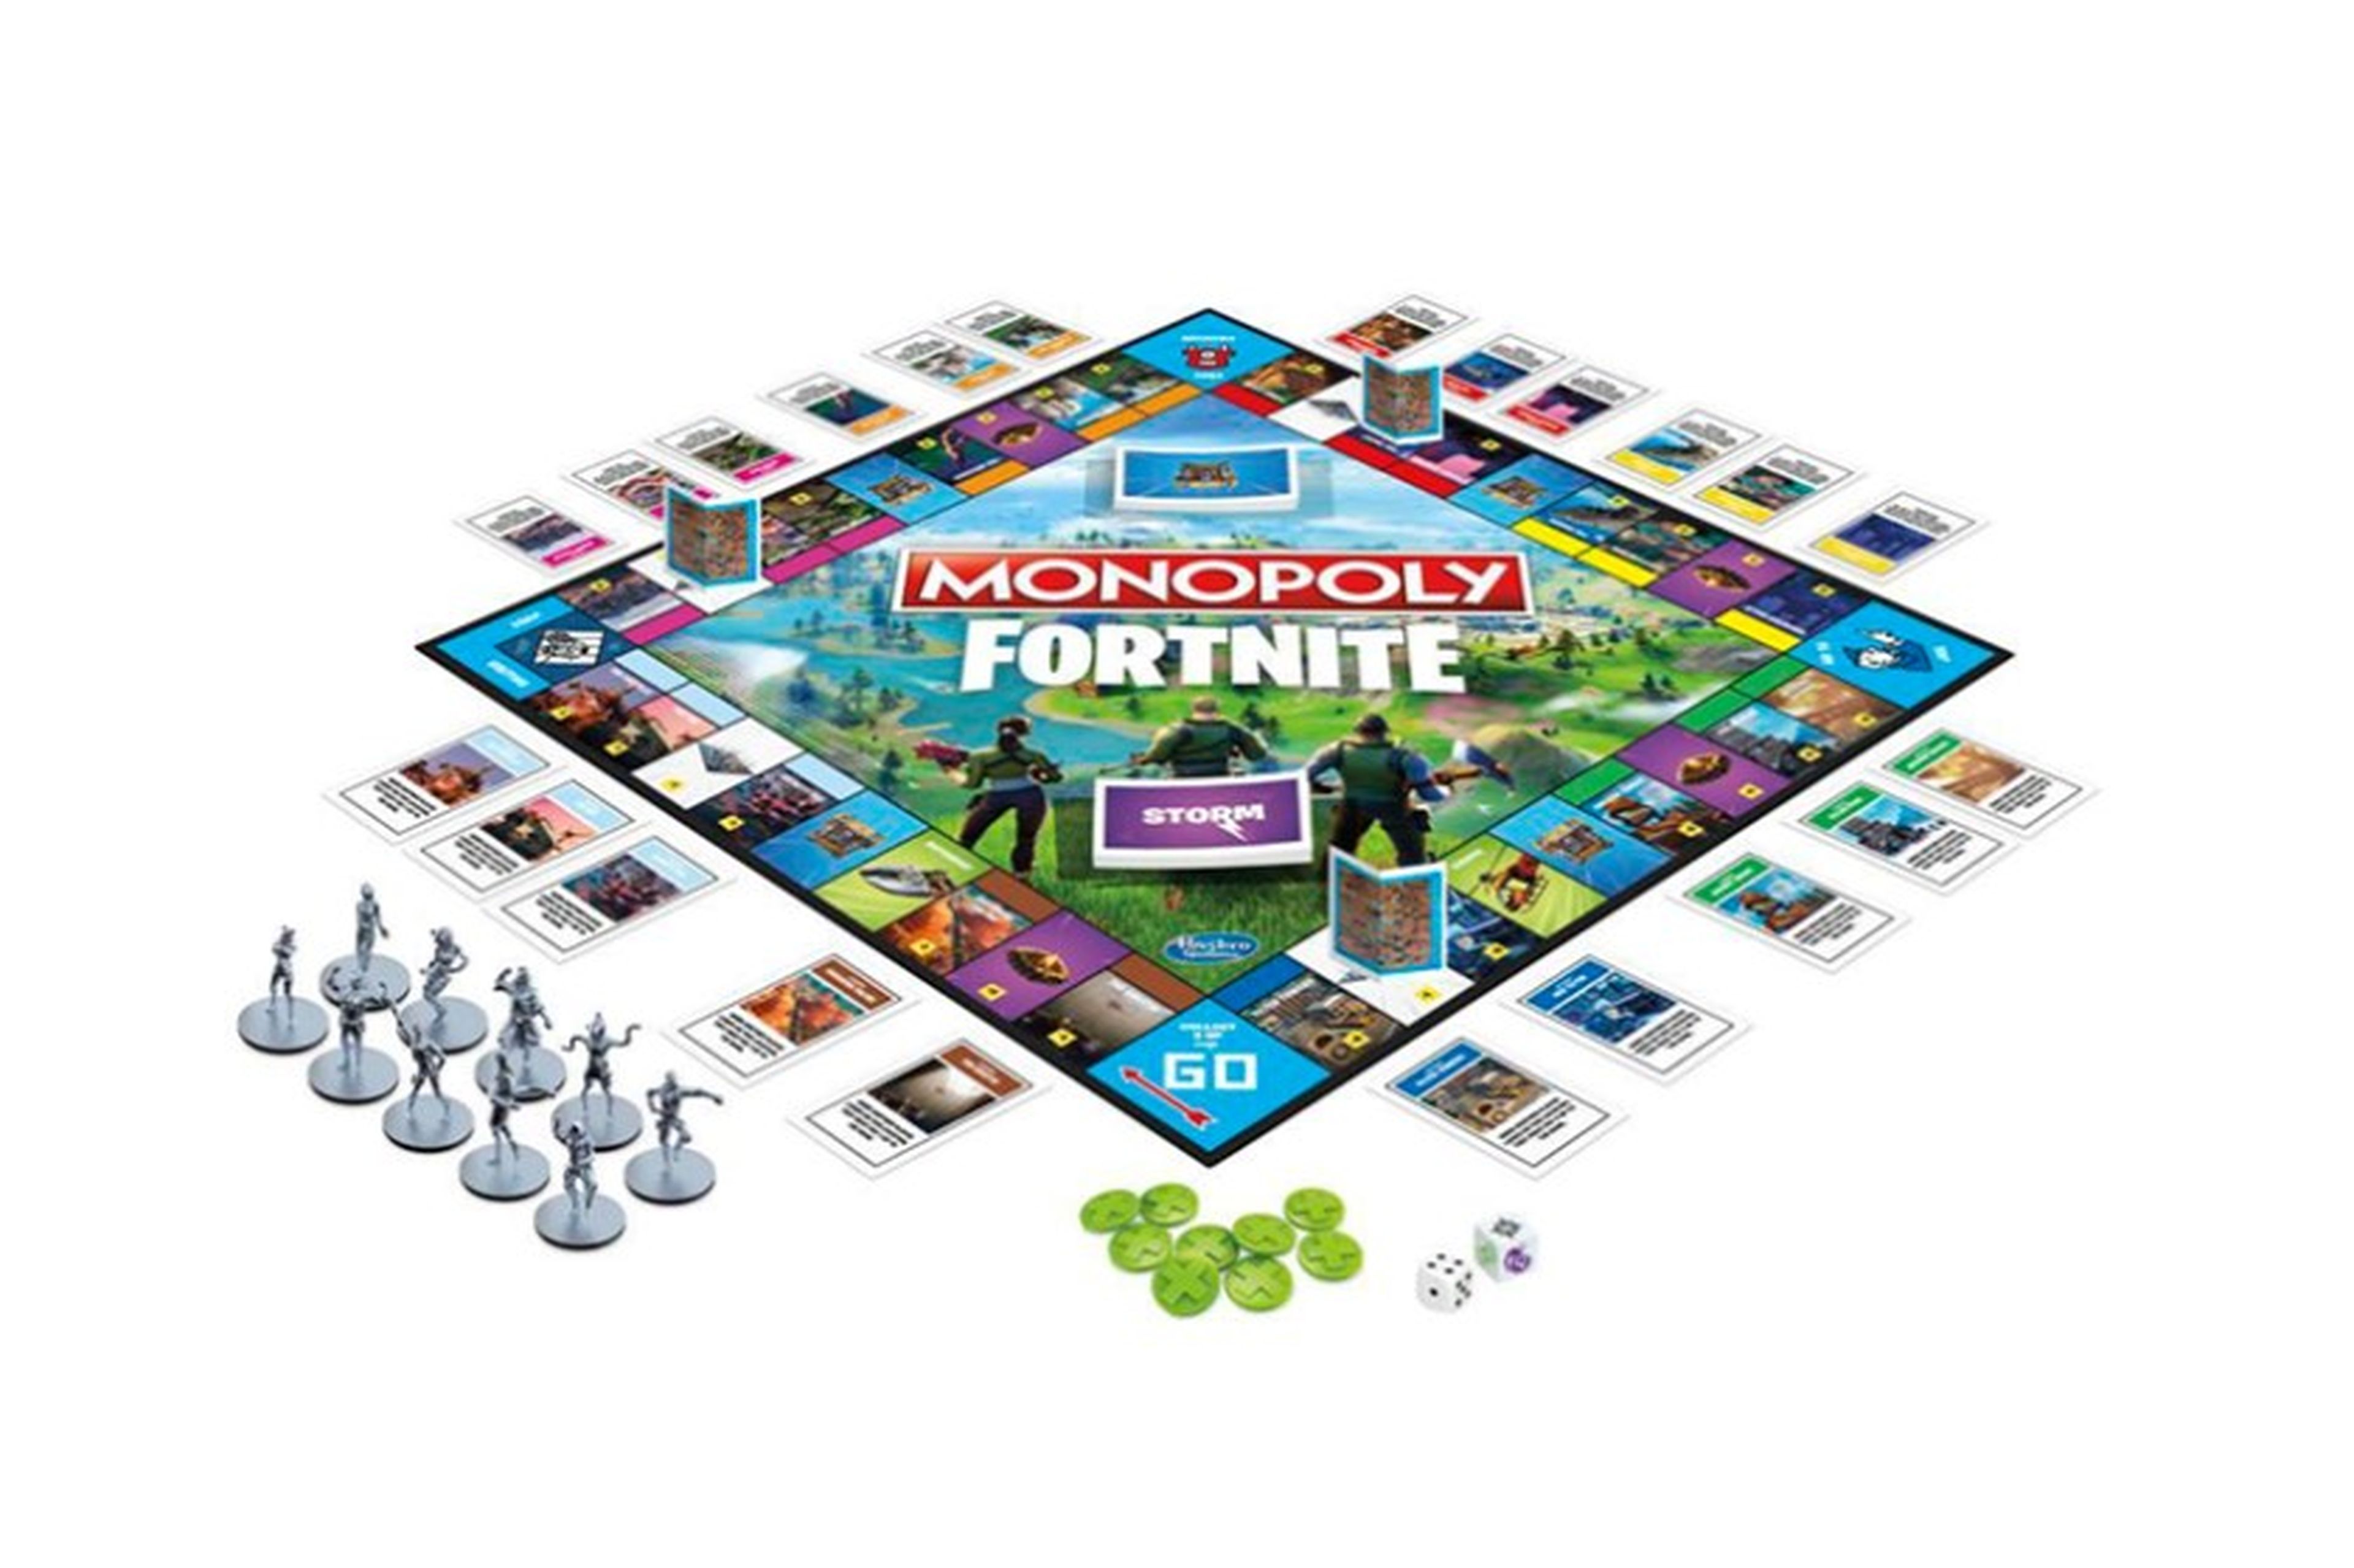 Acabamos de crearte una necesidad: el Monopoly de Fortnite.